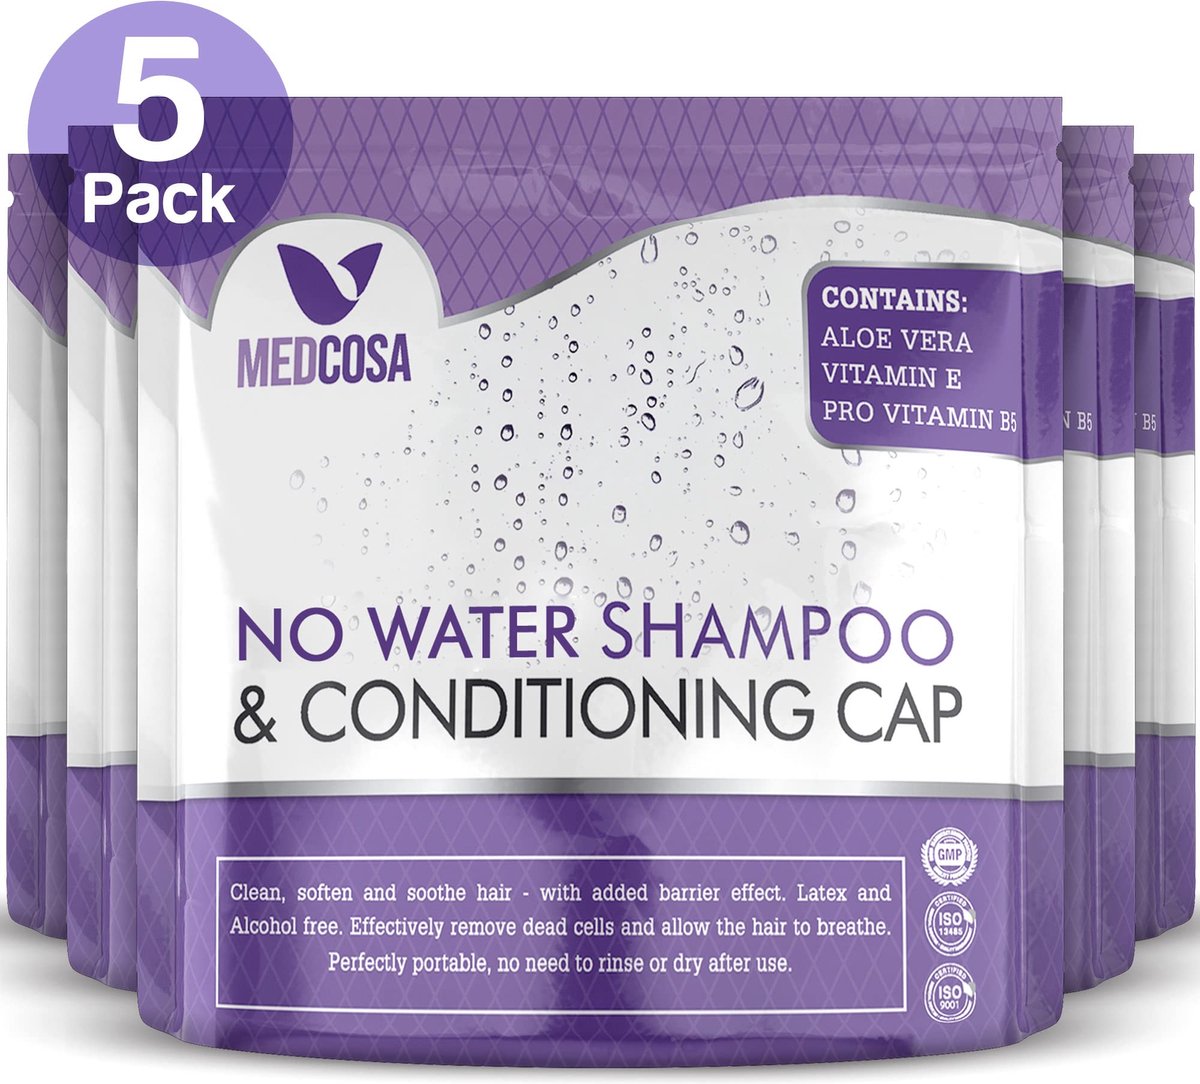 Medcosa Charlotte met shampoo zonder uitspoelen – 5 verpakkingen droge shampoo met aloë vera vitamine E en kamille – Charlotte voor het wassen van haar zonder water